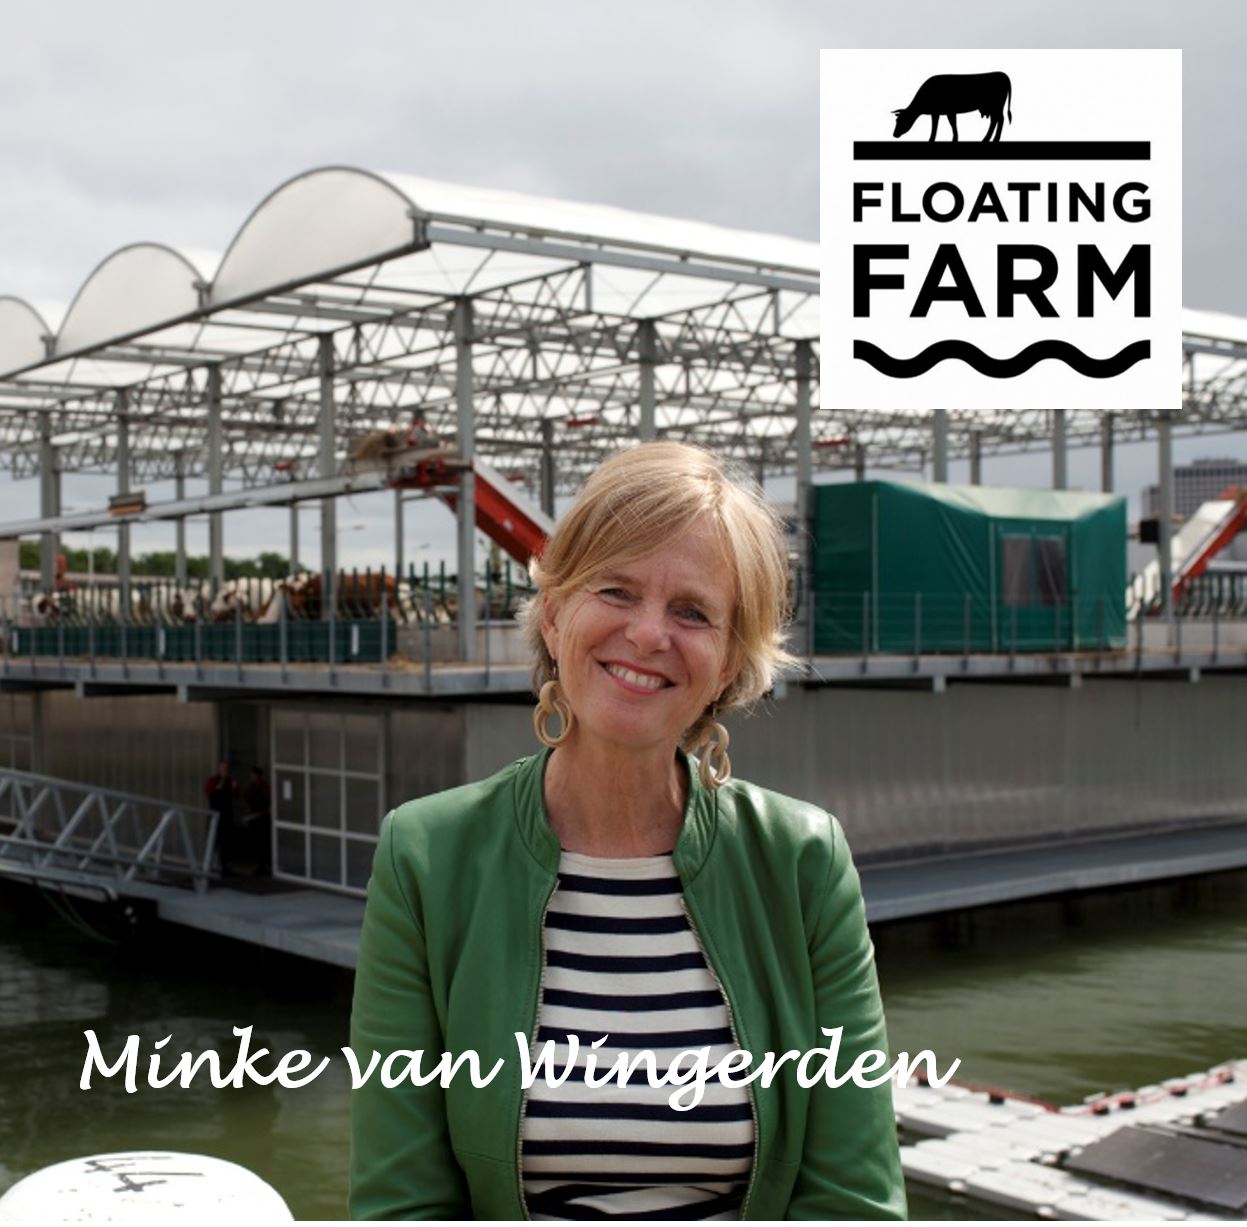 Floating Farm Rotterdam calf care system Minke van Wingerden nuchtere kalverenopvang